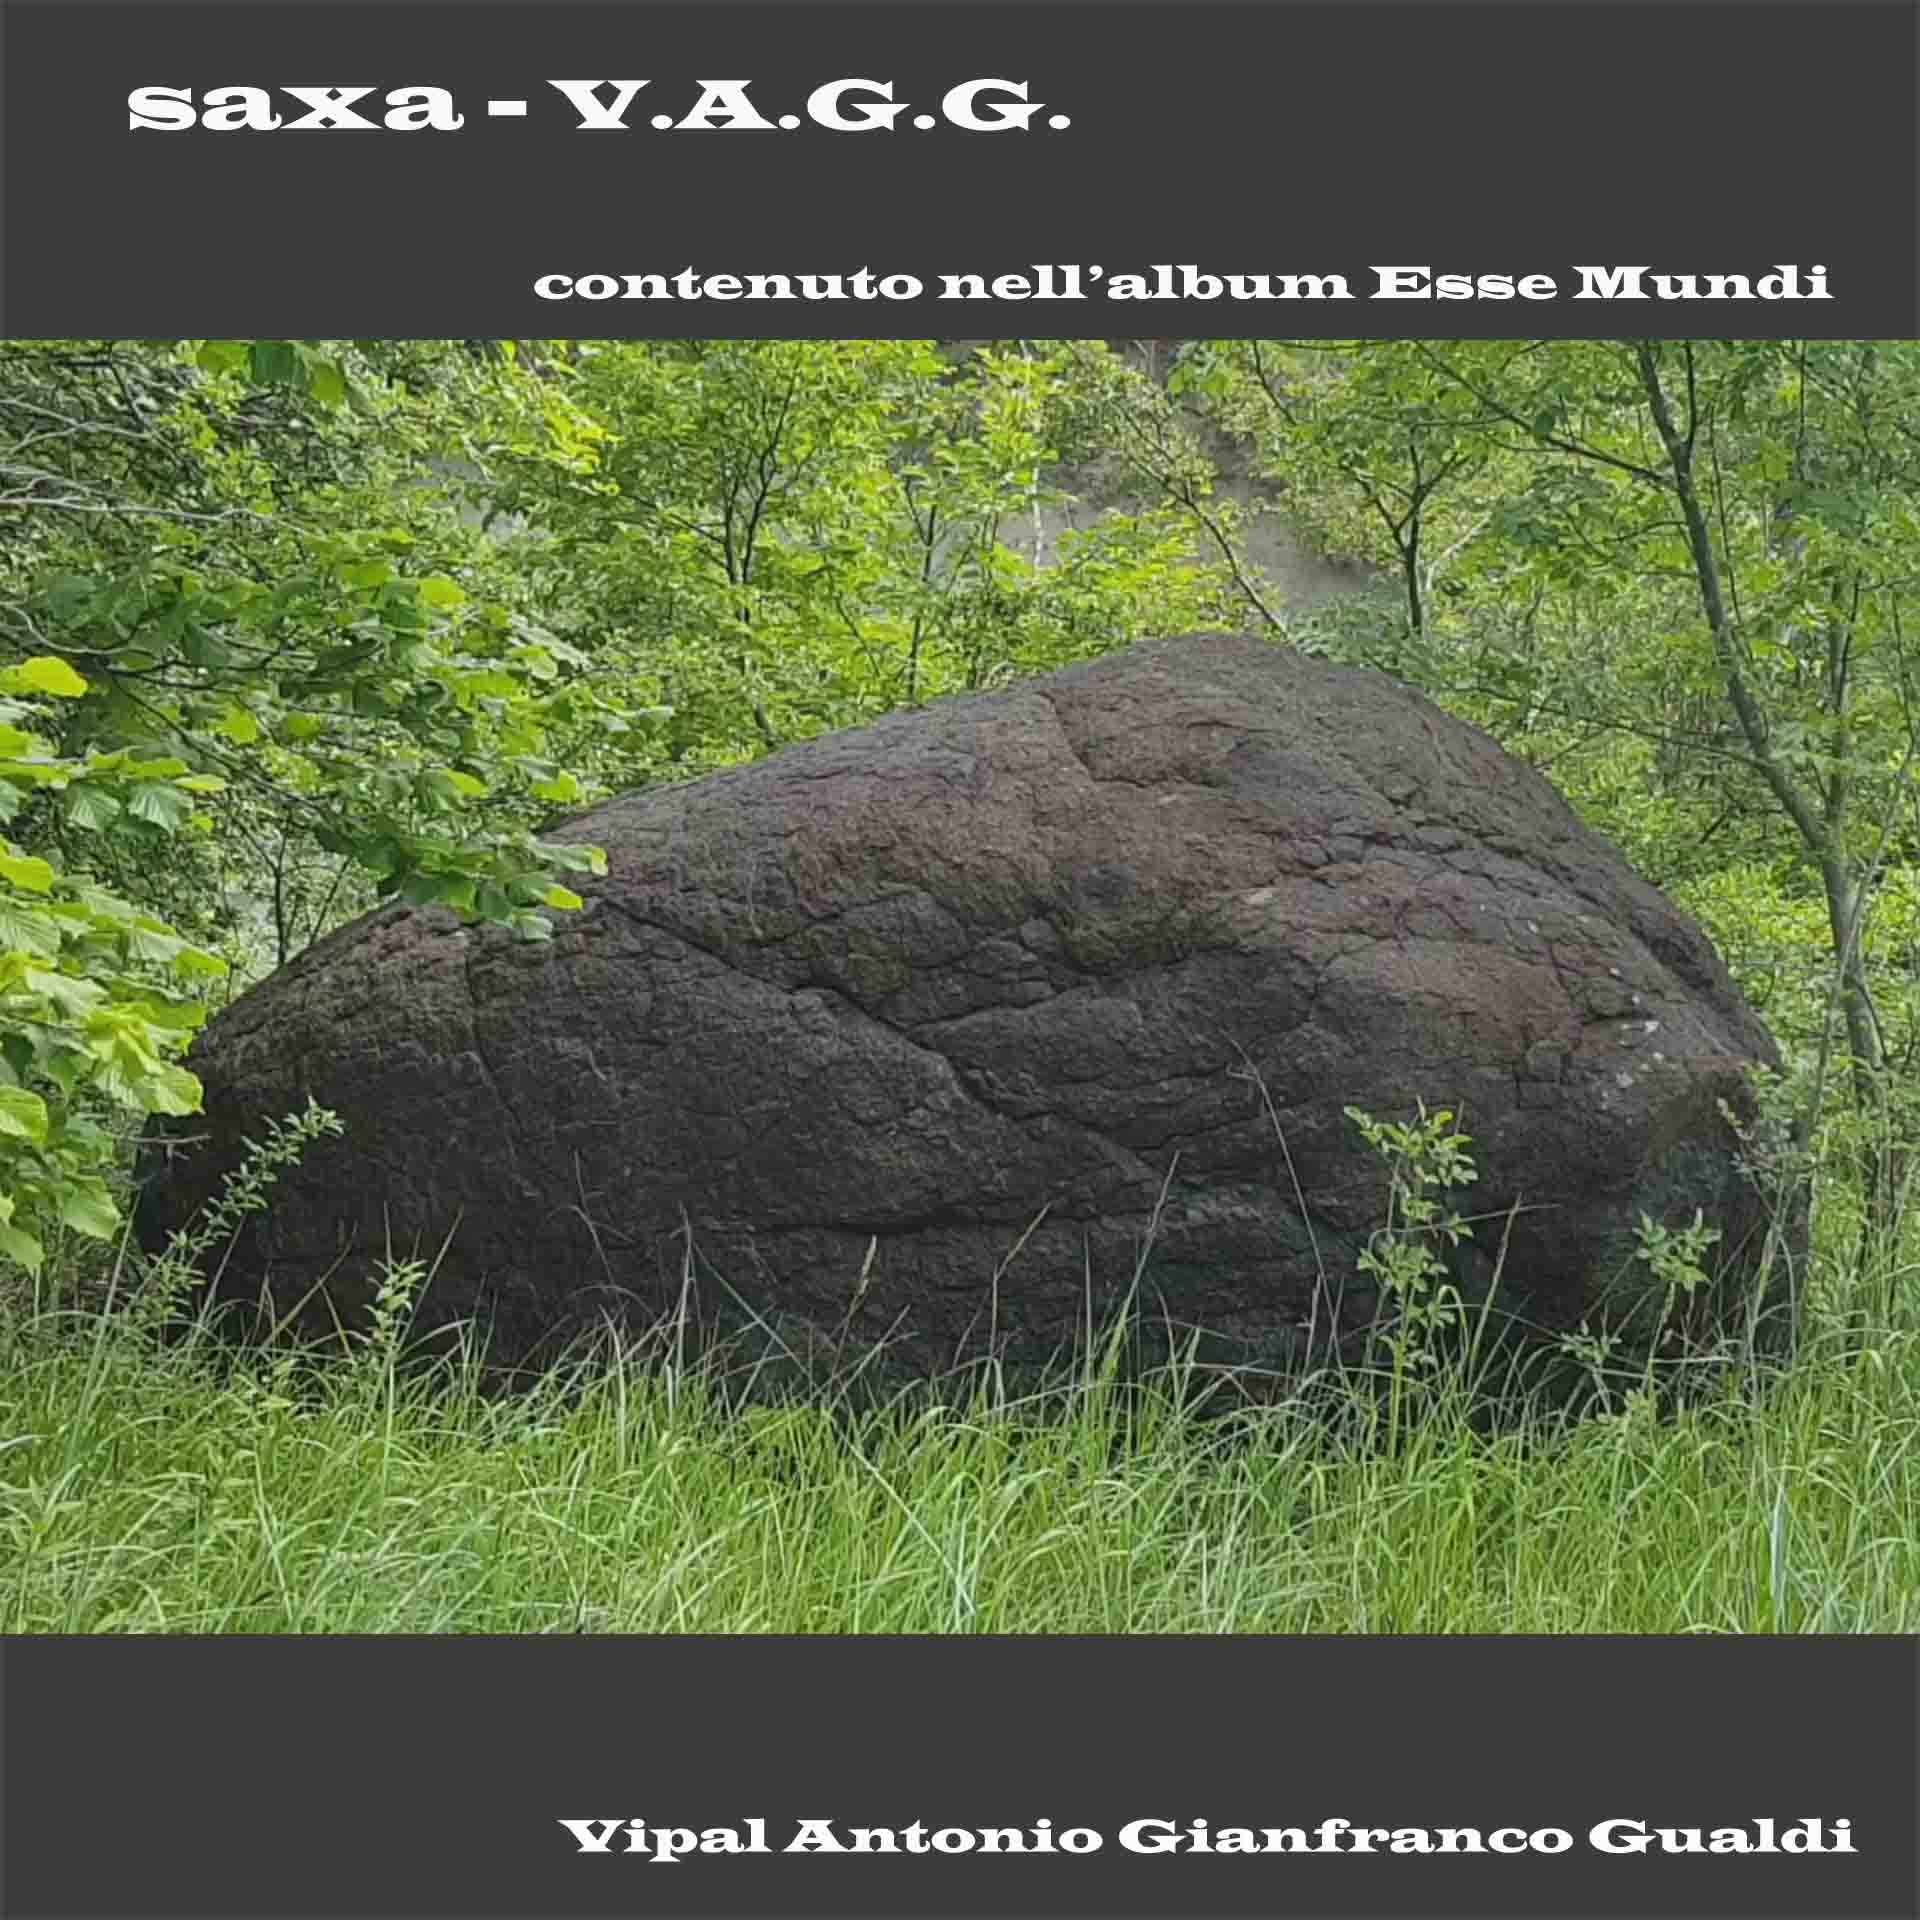 Copertina traccia Saxa contenuta nell'album Esse Mundi Musica di V.A.G.G. Vipa Antonio Giuanfranco Gualdi